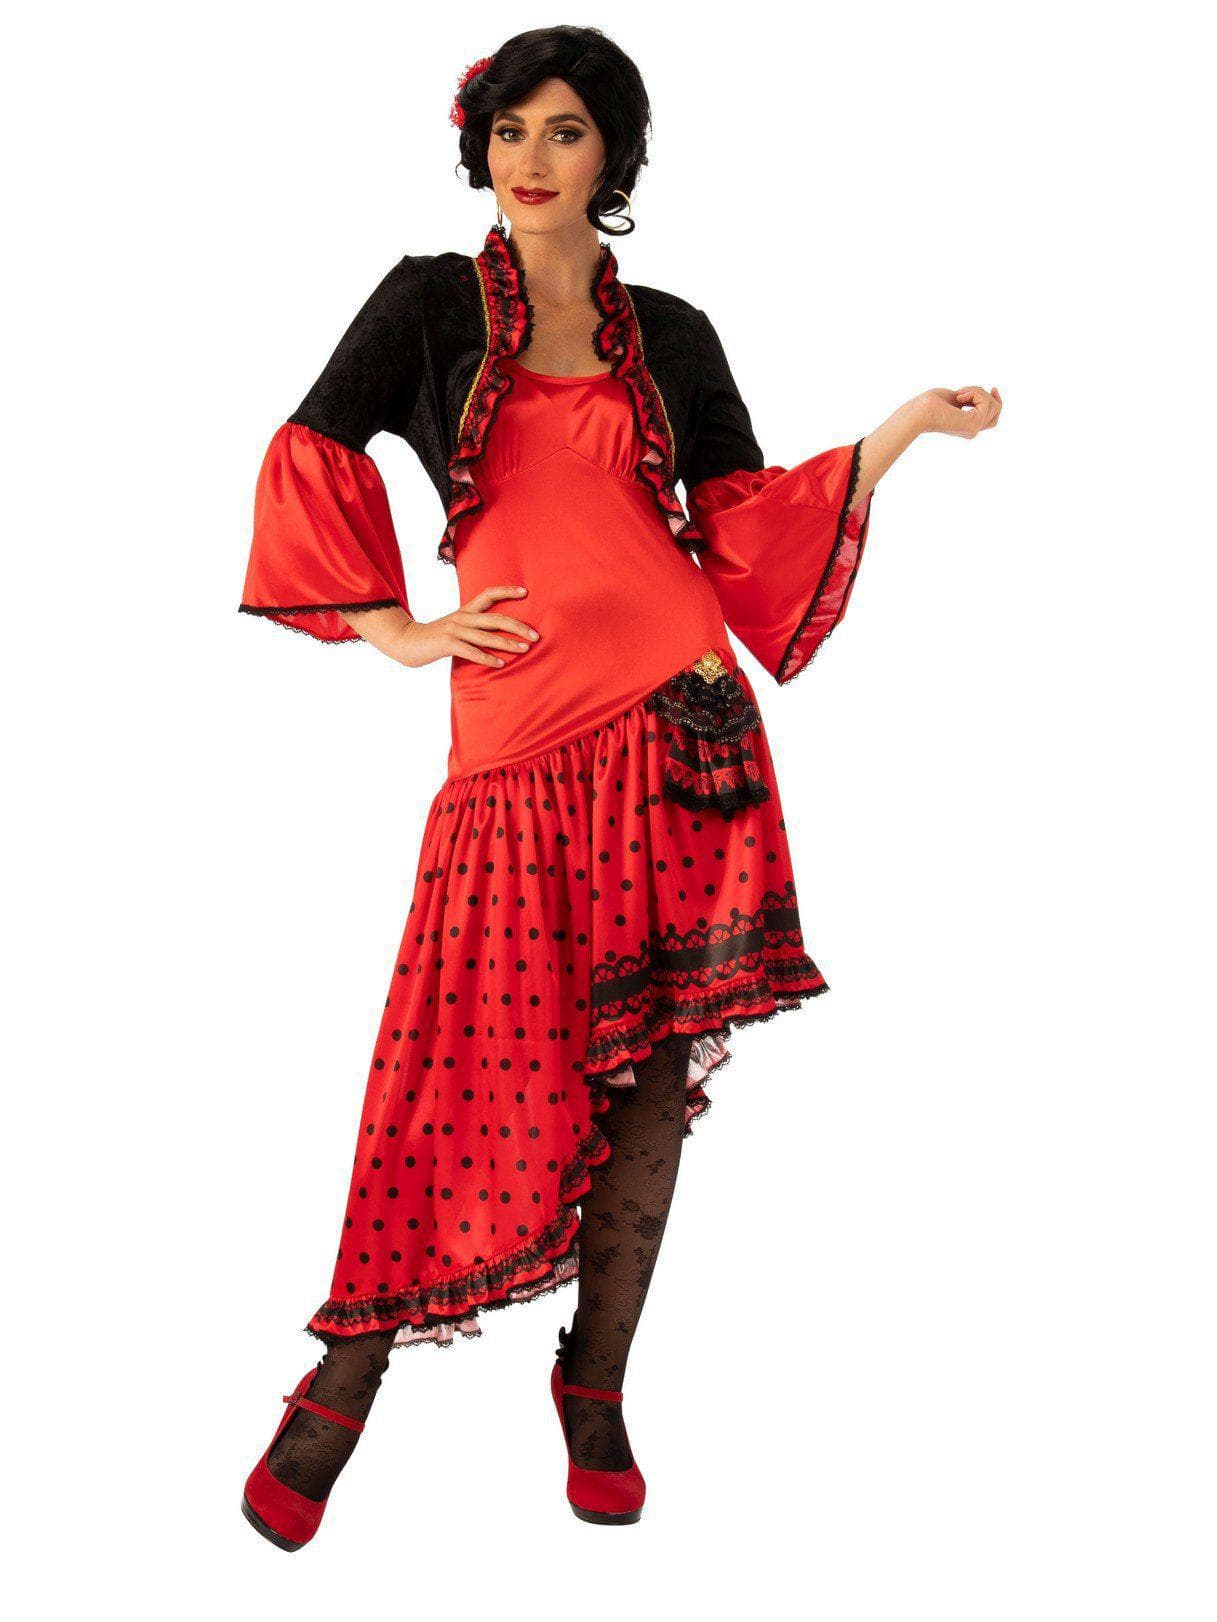 Adult Spanish Dancer Costume - costumes.com